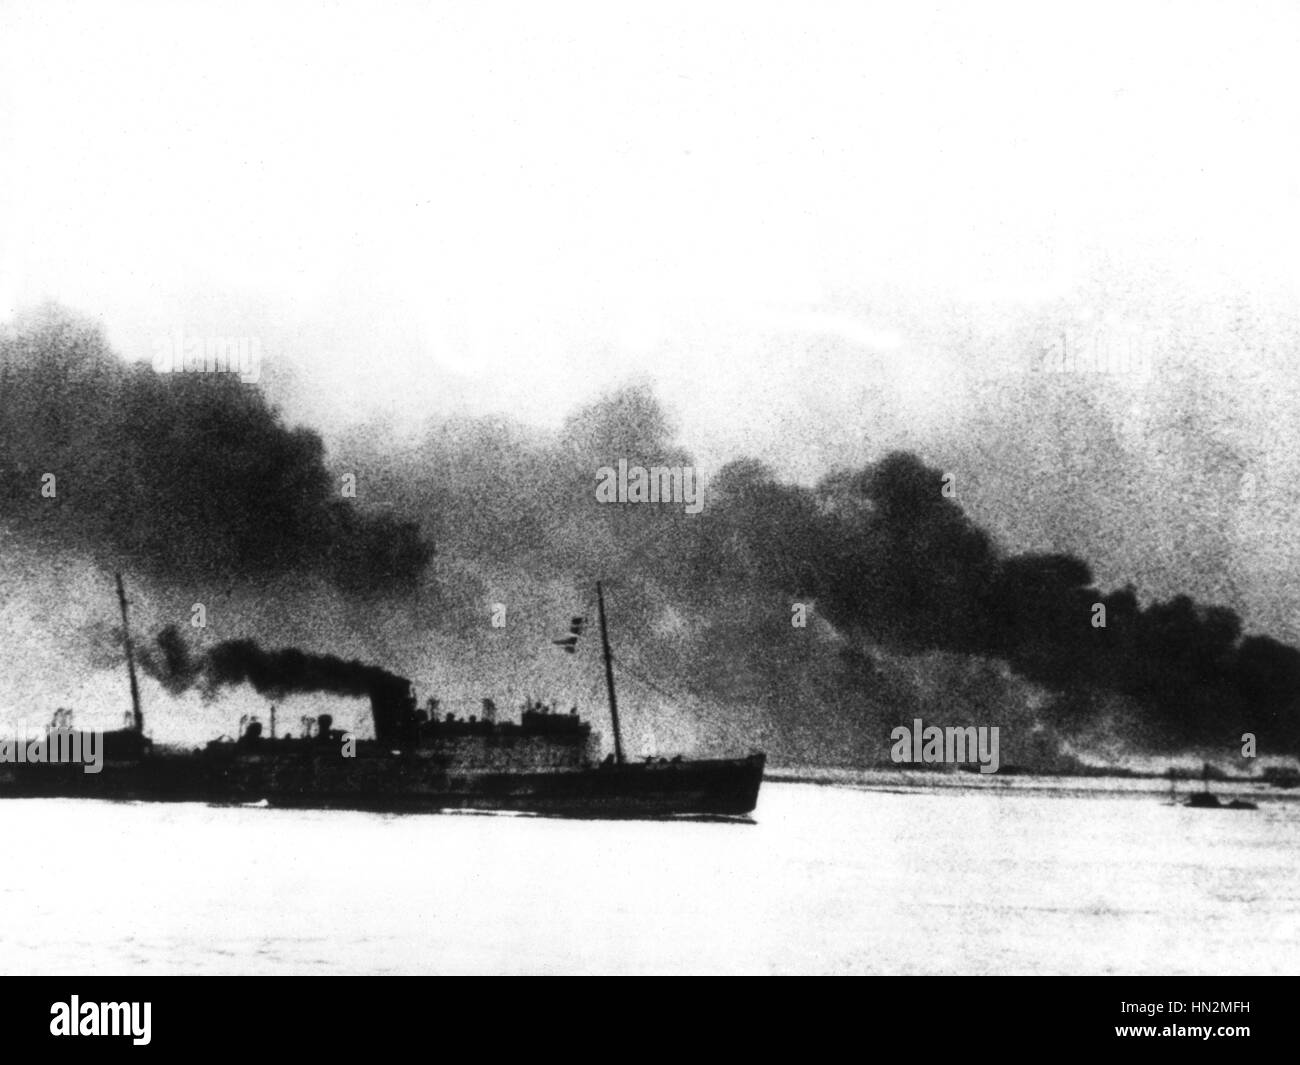 Bateaux britanniques en feu au large de Dunkerque Juin 1940 France - la seconde guerre mondiale, Washington, National Archives Banque D'Images